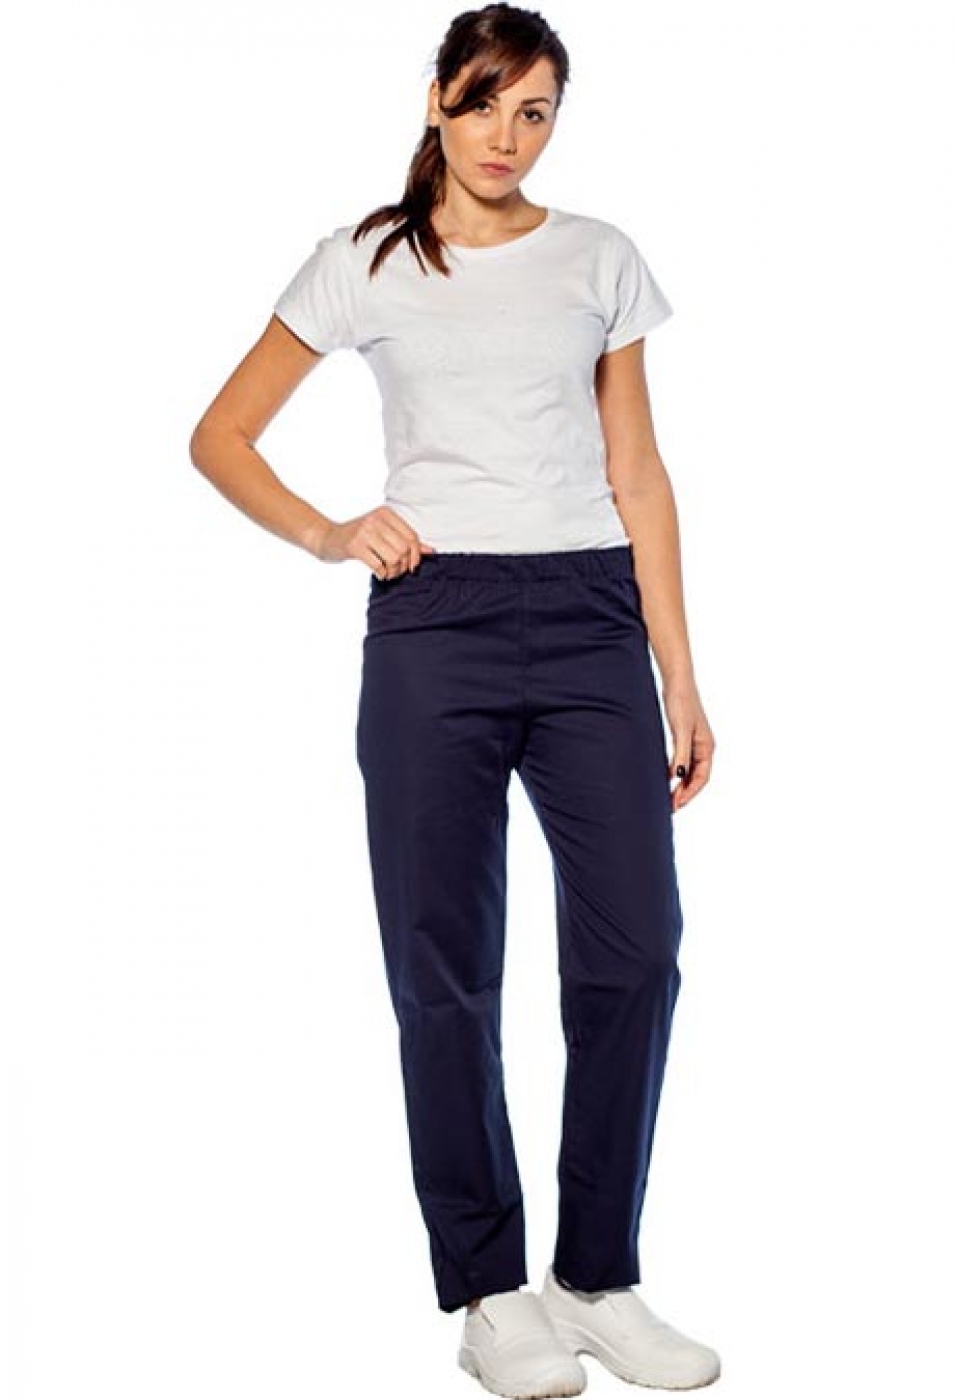 Uniforme Curatenie - Pantaloni femeie serviciu sau camerista, cu elastic si buzunar la spate